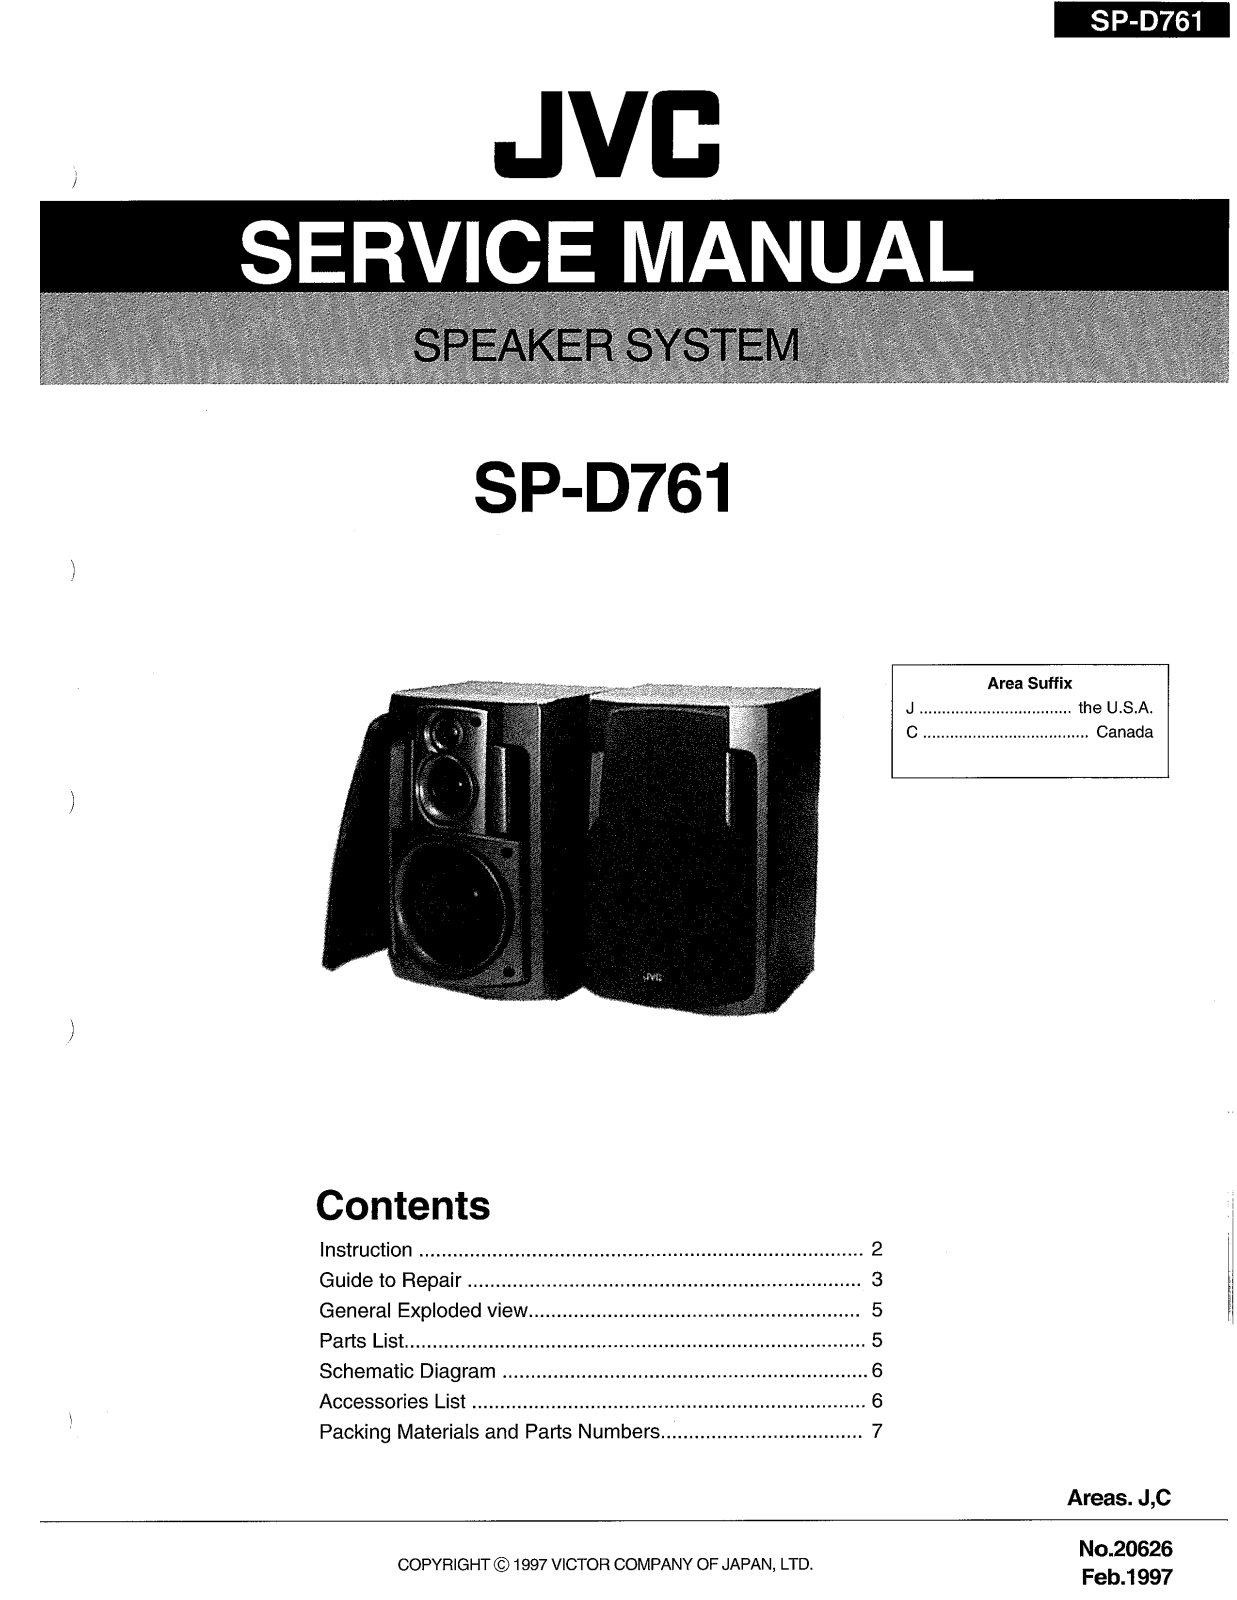 JVC SP-D761 Service Manual